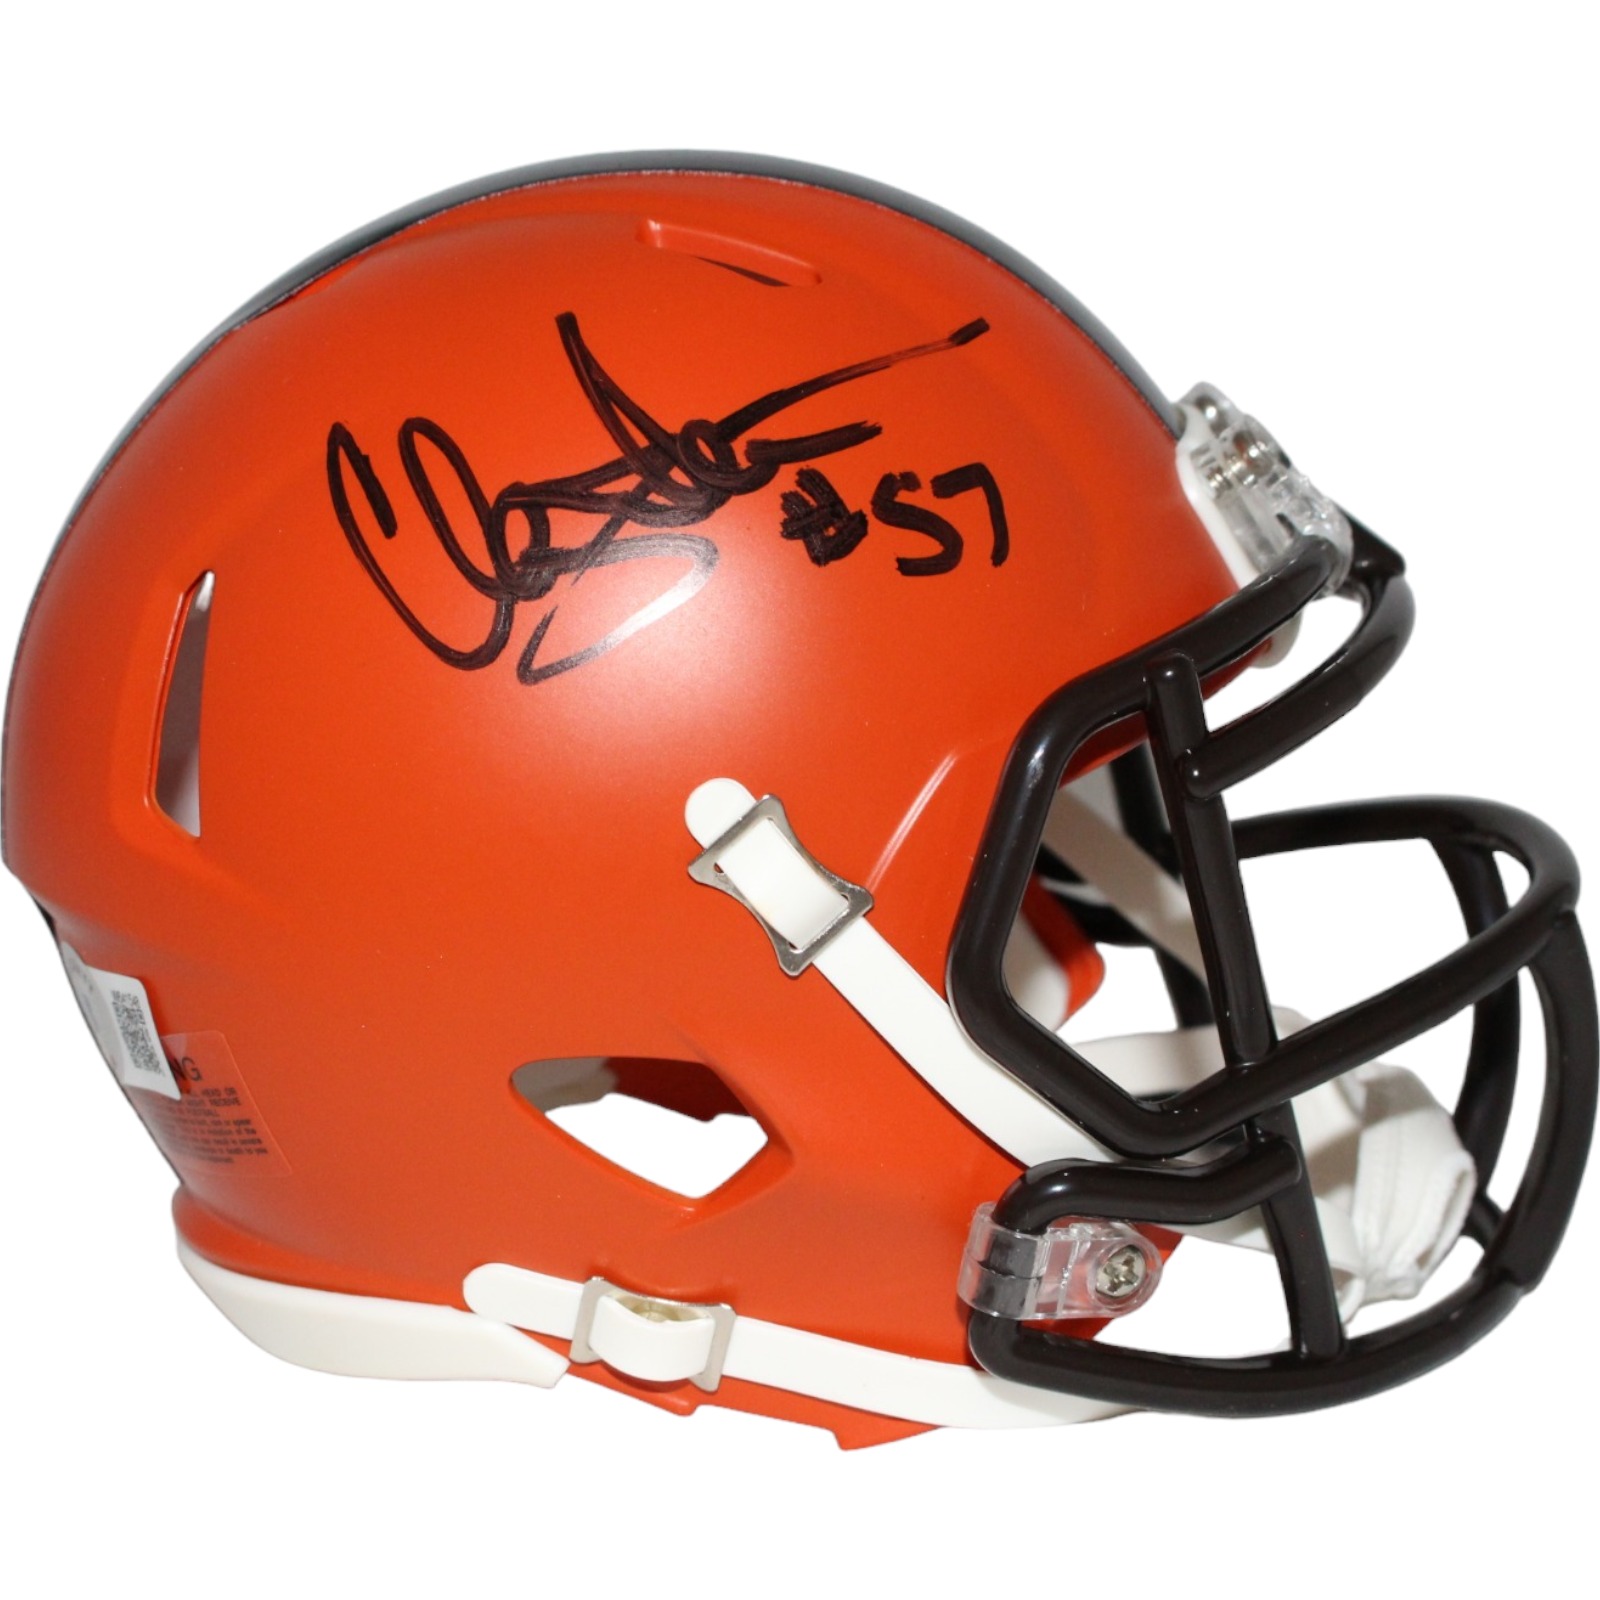 Clay Matthews Sr. Signed Cleveland Browns Mini Helmet Beckett